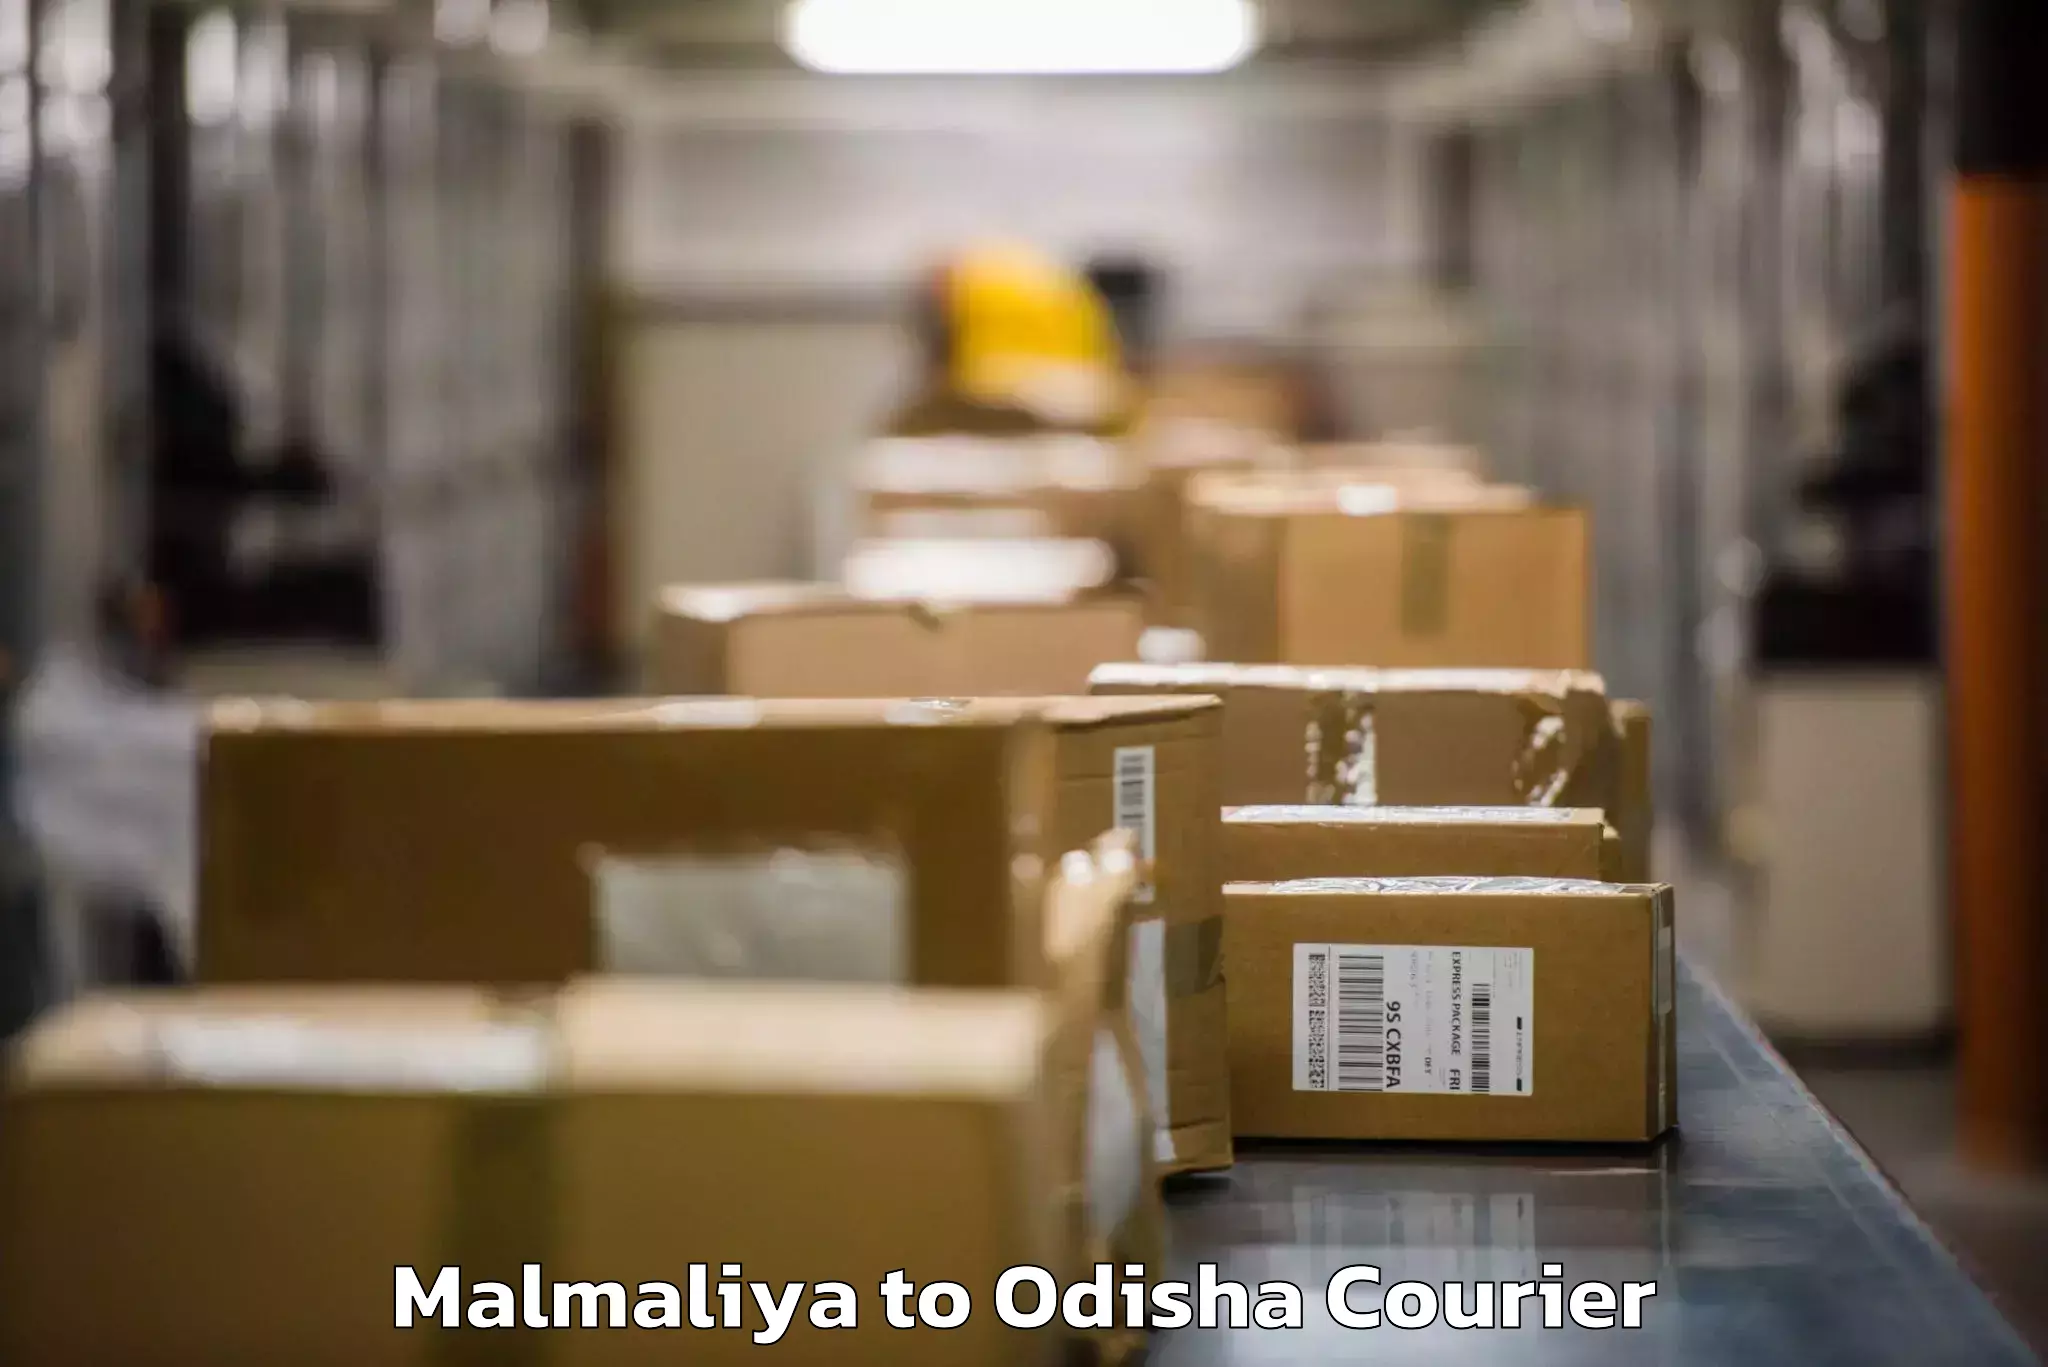 Door-to-door baggage service Malmaliya to Odisha